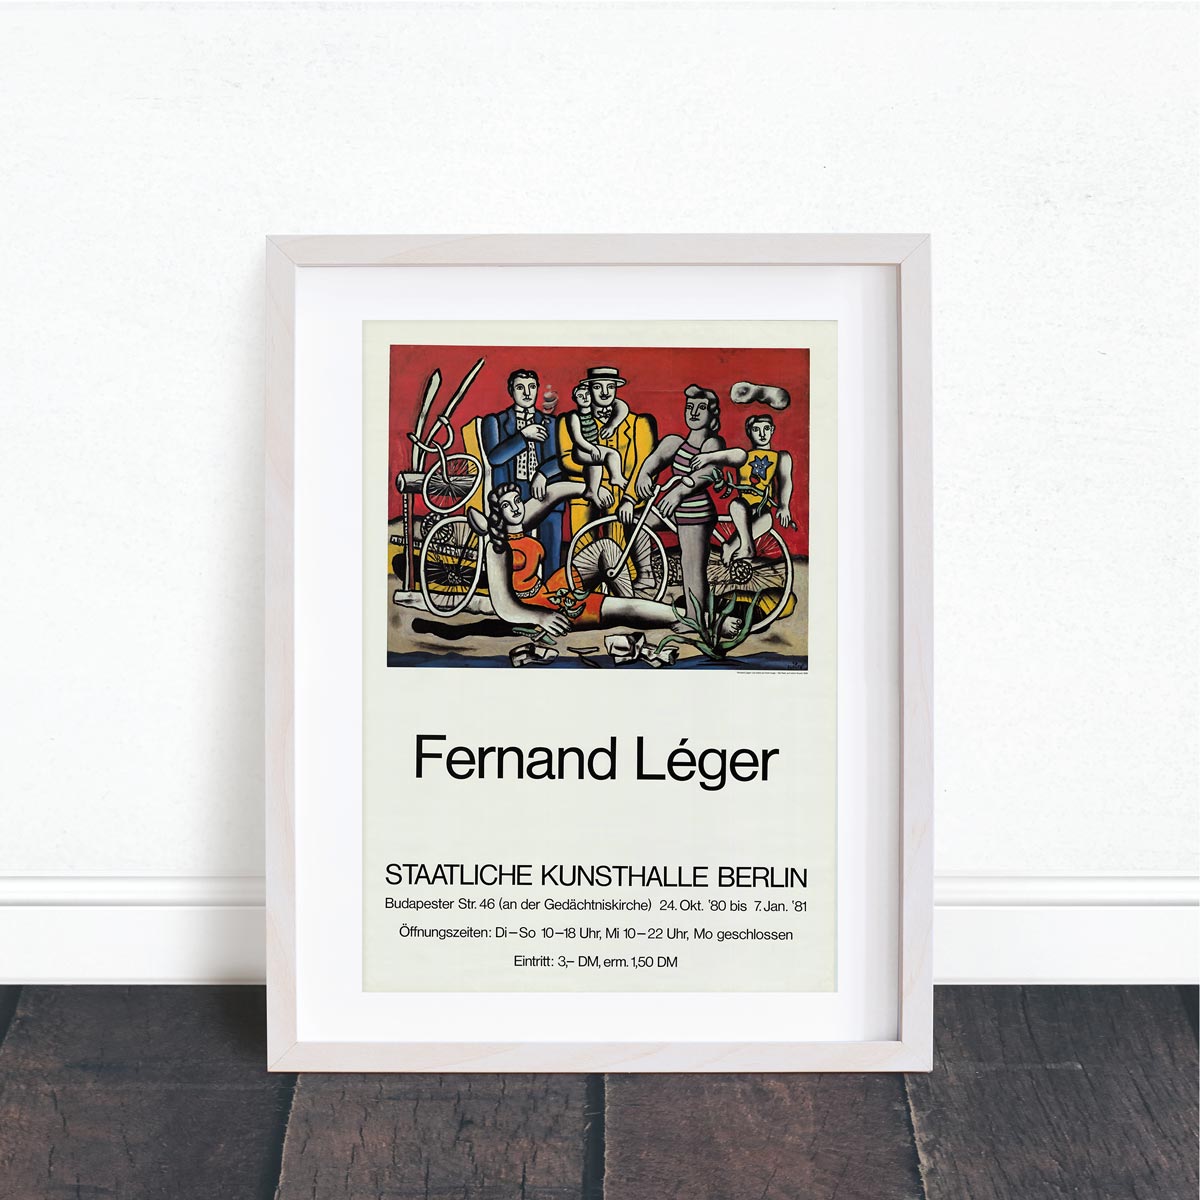 Leger, Fernand - Die Rast auf rotem Grund, Staatliche Kunsthalle Berlin, 1980